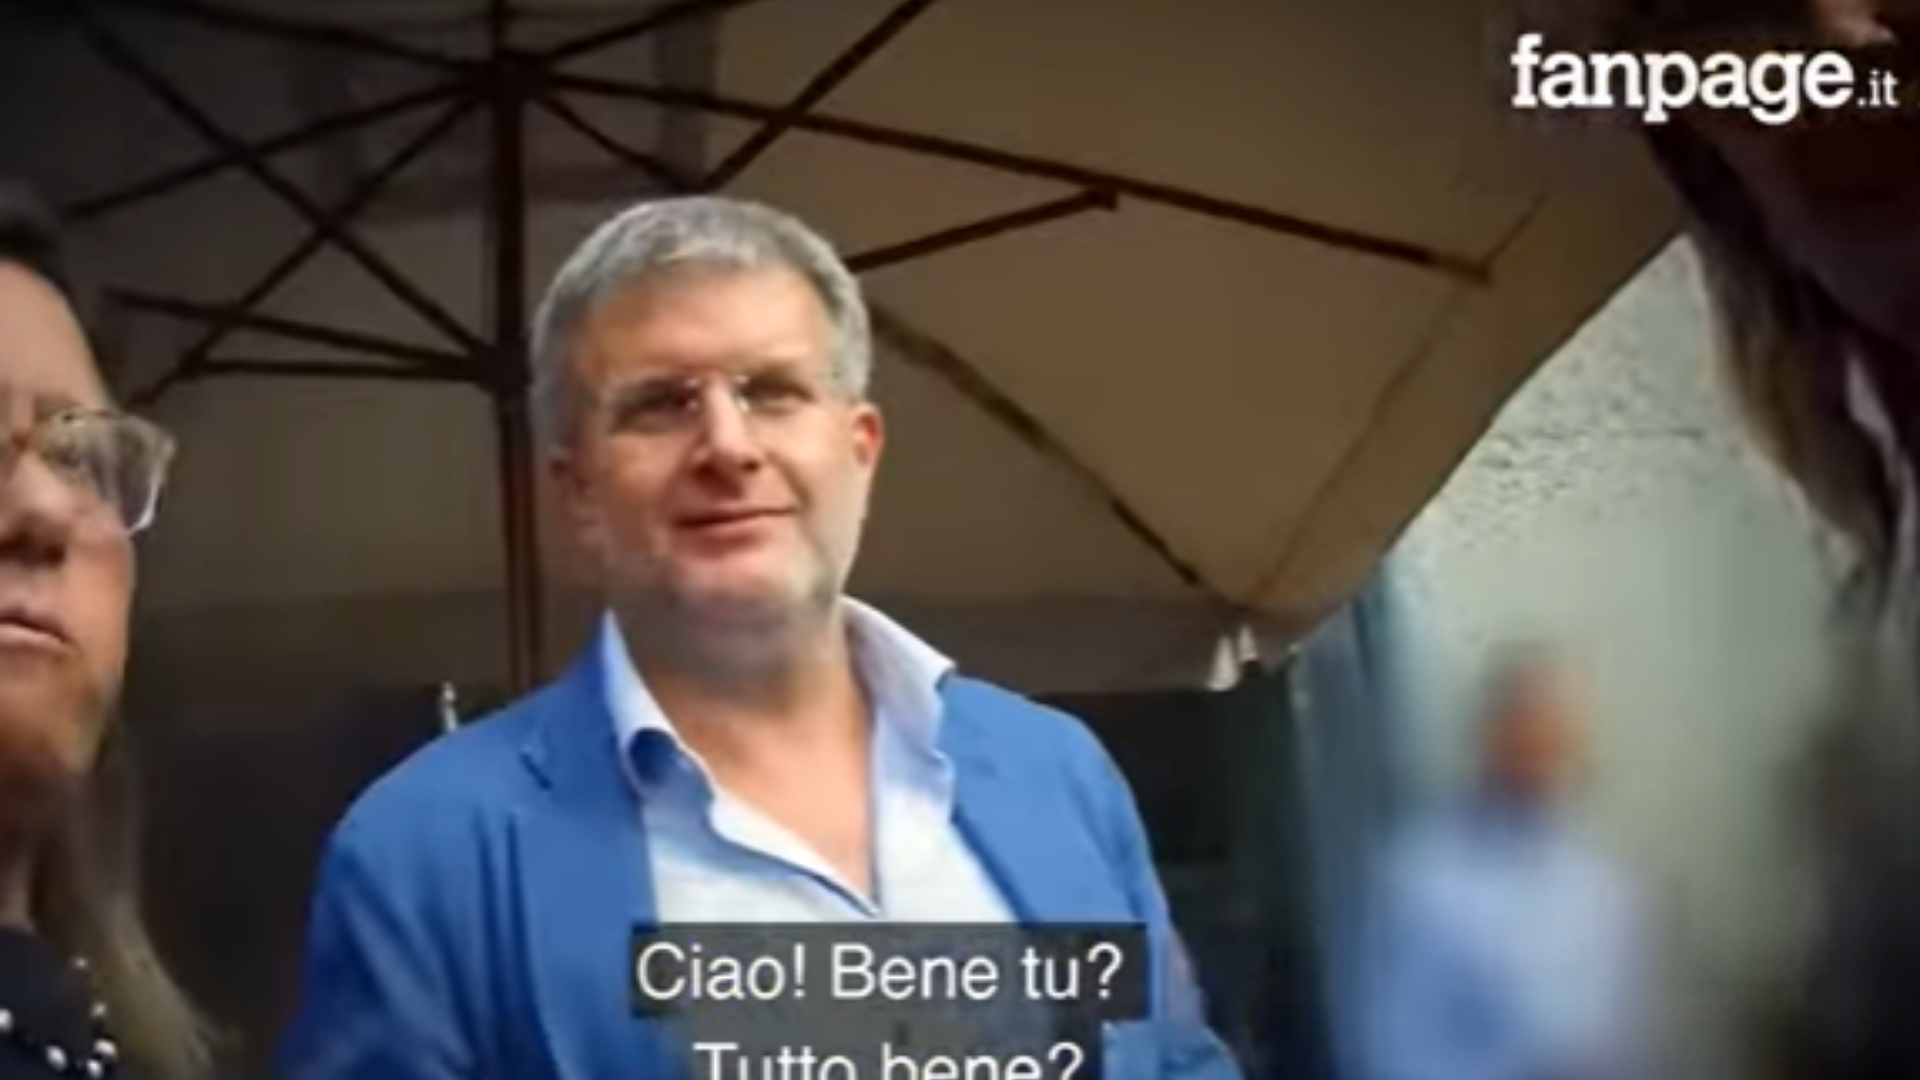 Video Fanpage, Carlo Fidanza (FdI) si autosospende: “Né finanziamenti irregolari né estremismo, io”